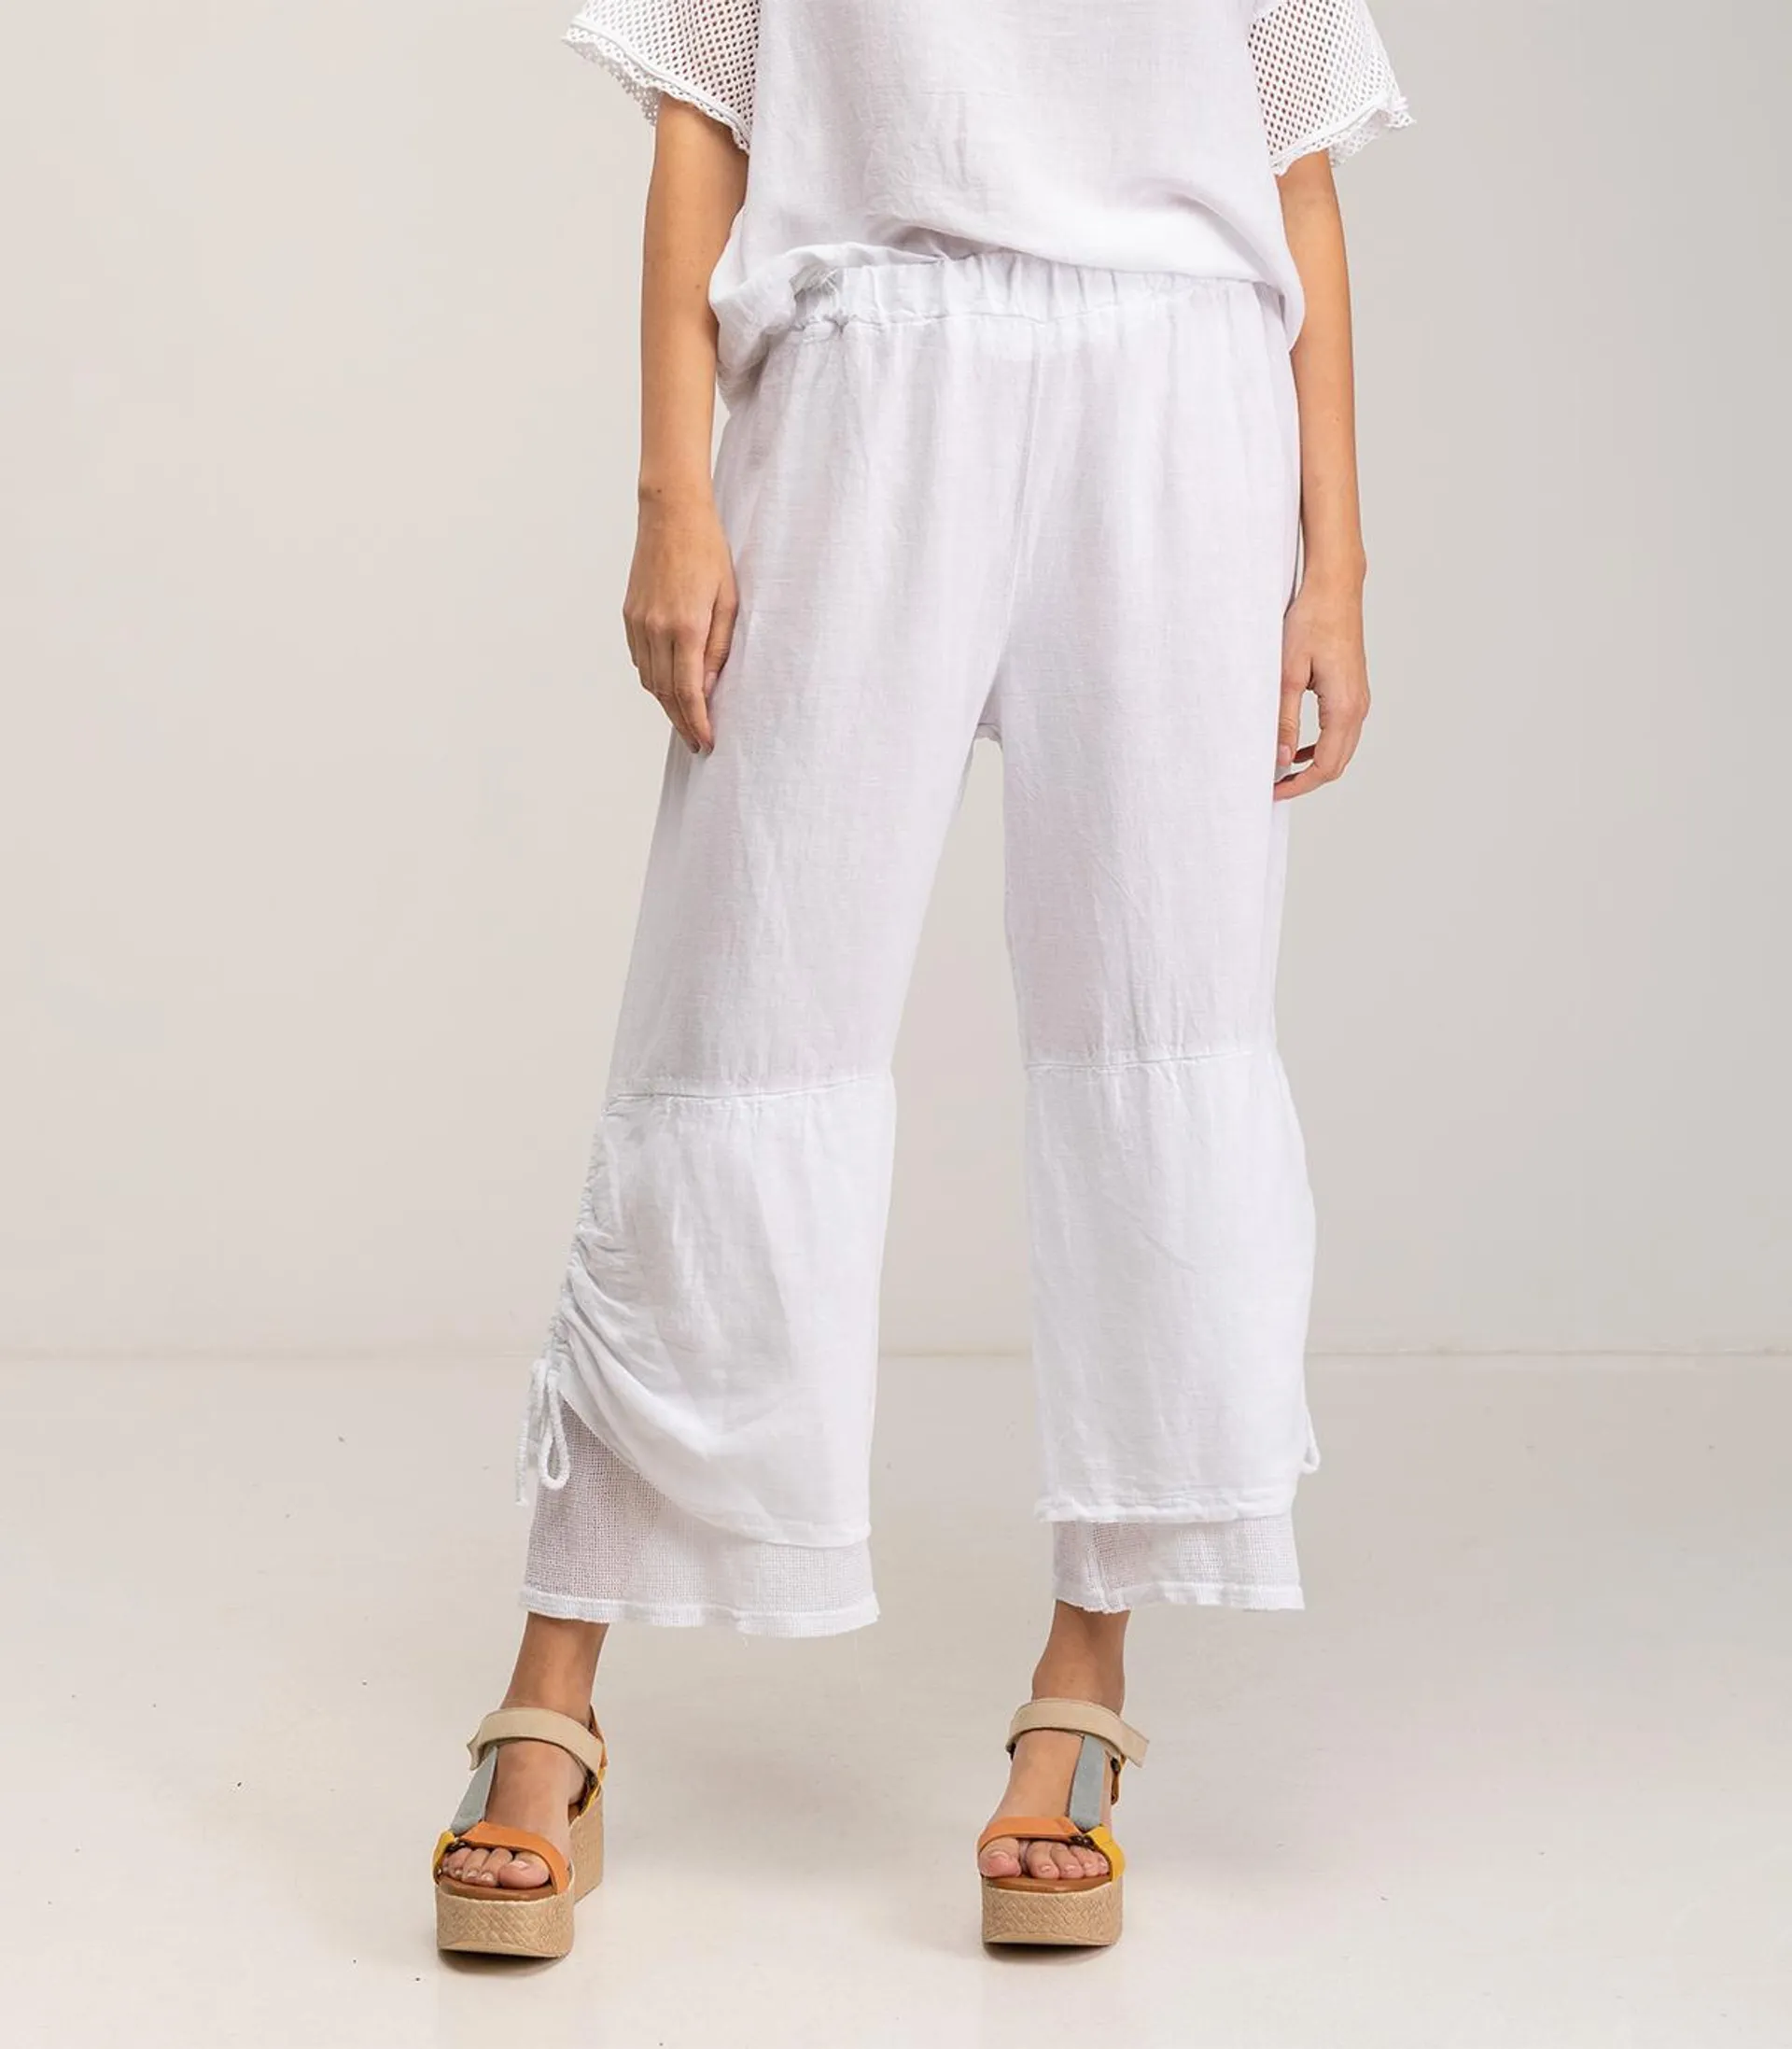 Pantalon ancho en mezcla de lino y algodón de tiro alto y cintura elástica con cordón ajustable en el bajo White